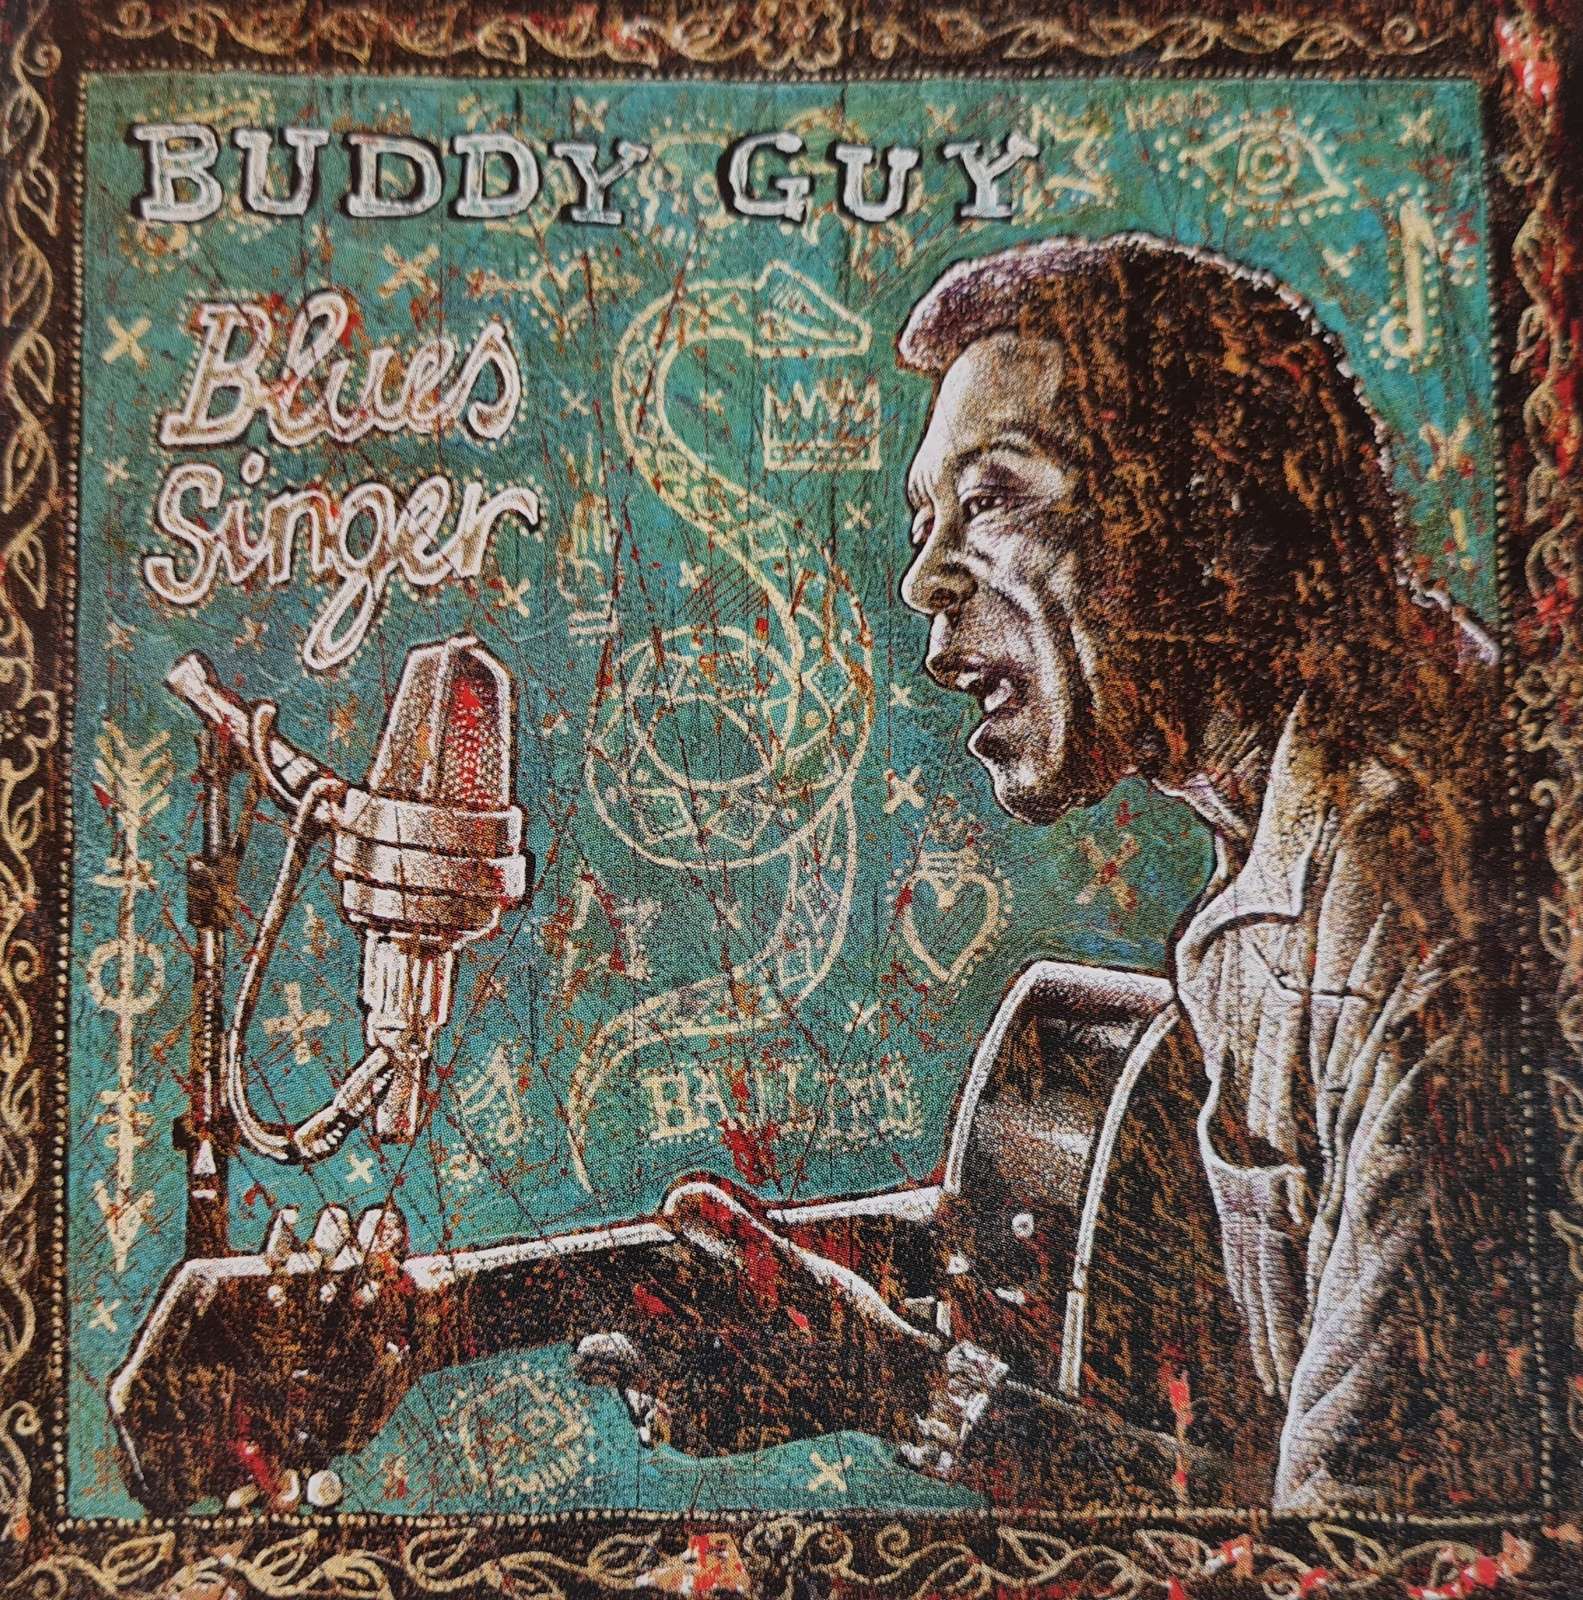 Buddy Guy - Blues Singer (CD)